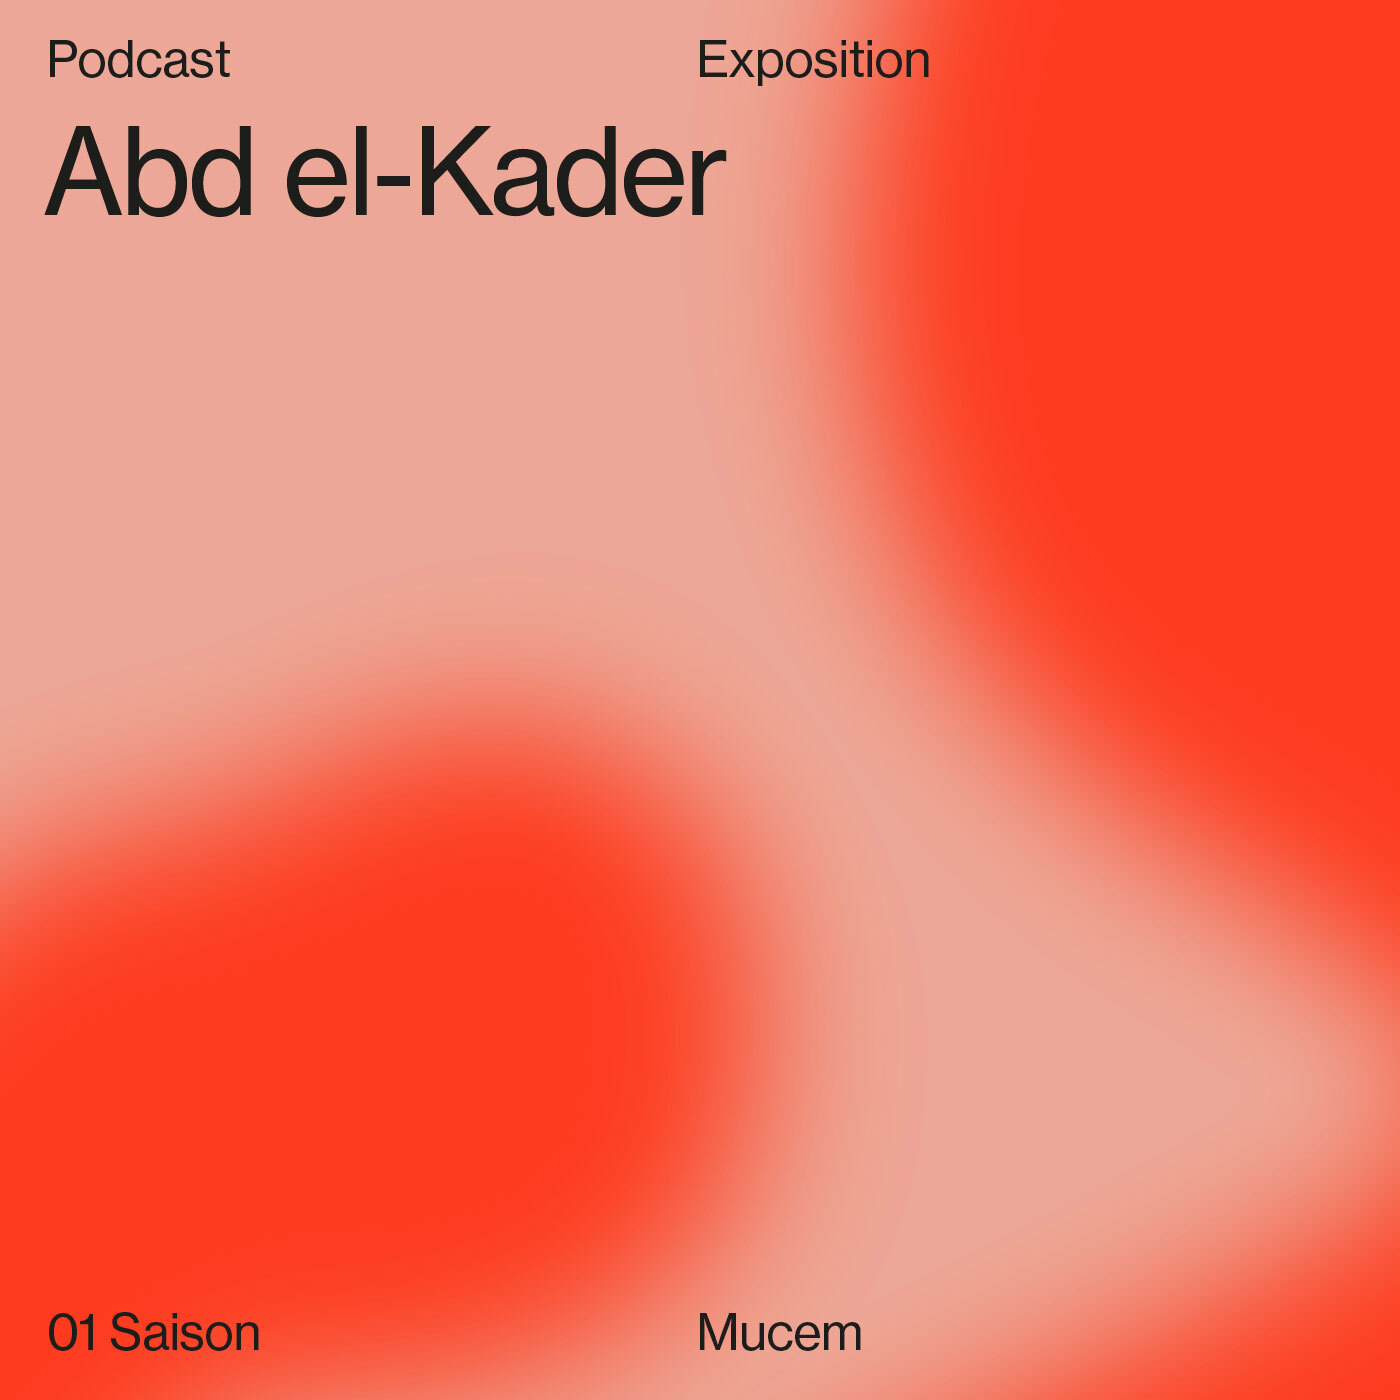 Podcast Abd el Kader